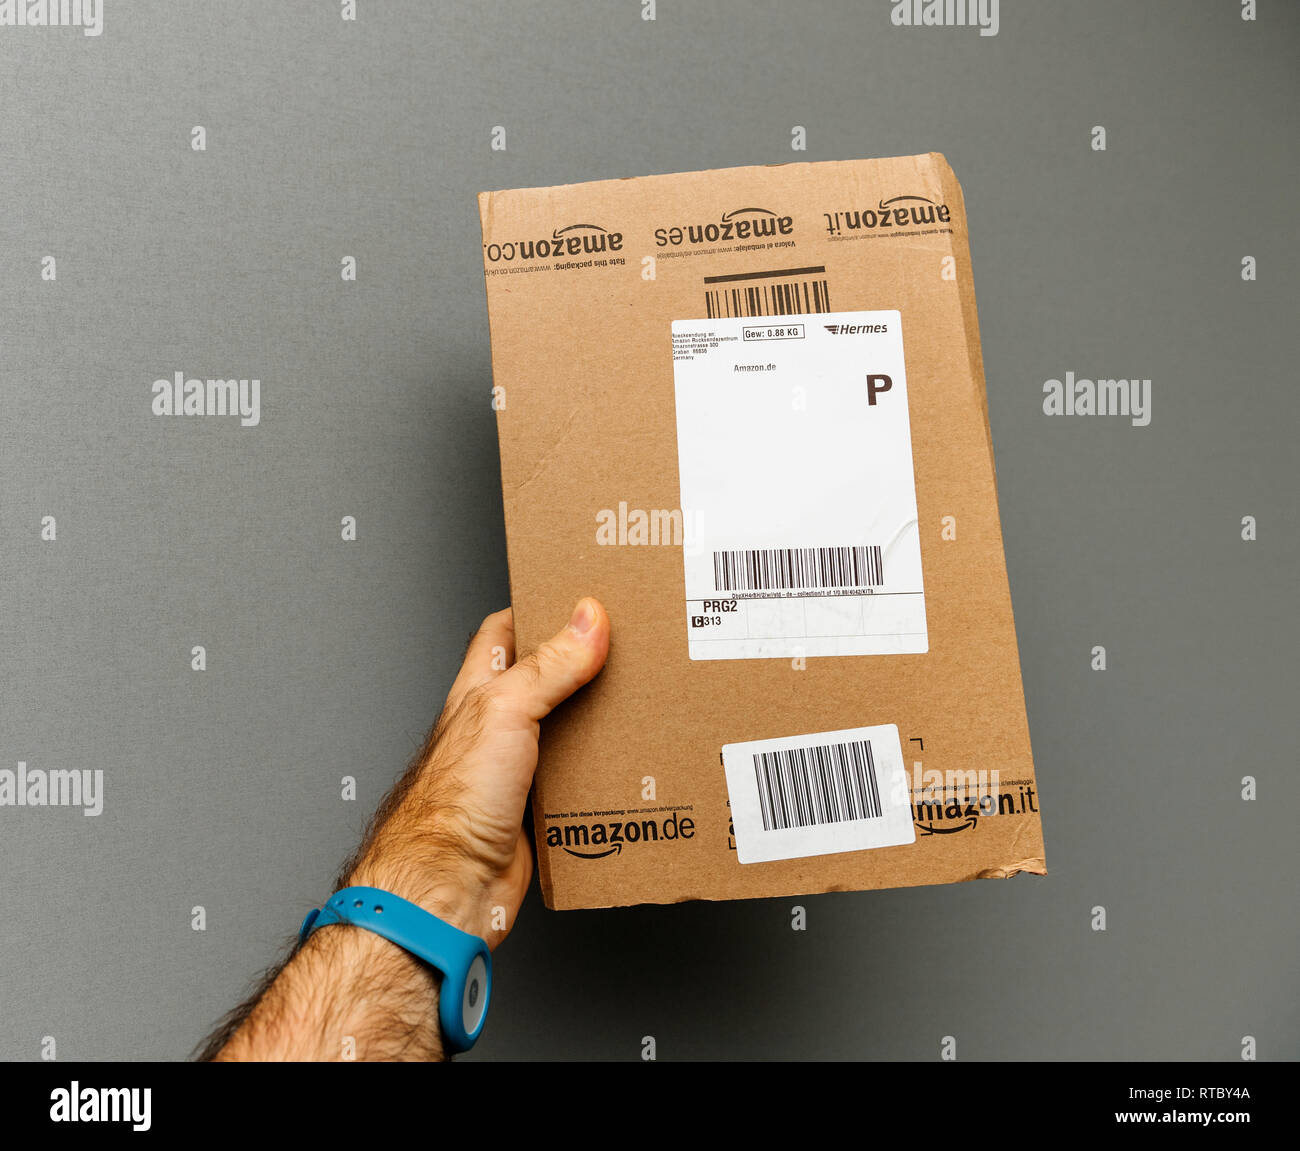 PARIS, Frankreich, 30. Oktober 2017: Mann hält Amazon Deutschland Hermes  prime Karton Lieferung gegen grauer Hintergrund Stockfotografie - Alamy